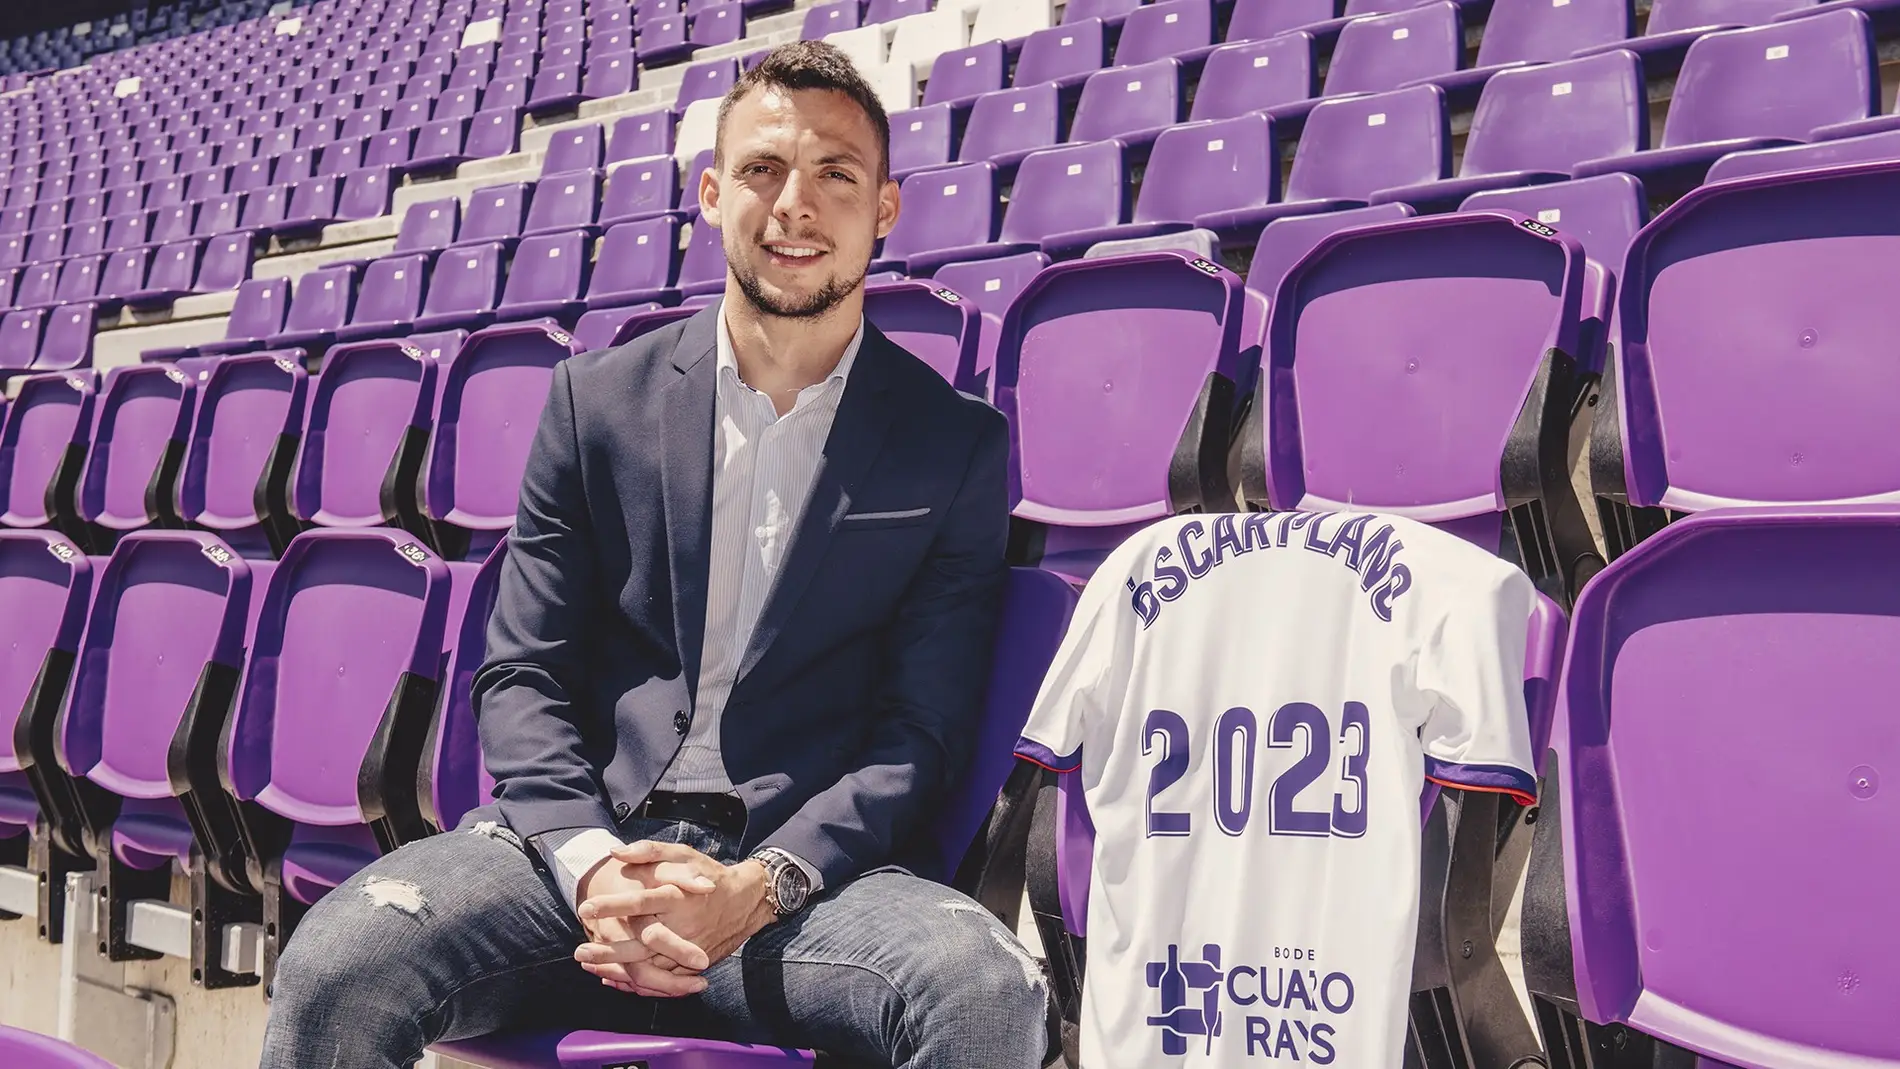 Óscar Plano renovó en mayo su contrato con el Real Valladolid por dos años más, hasta 2023.